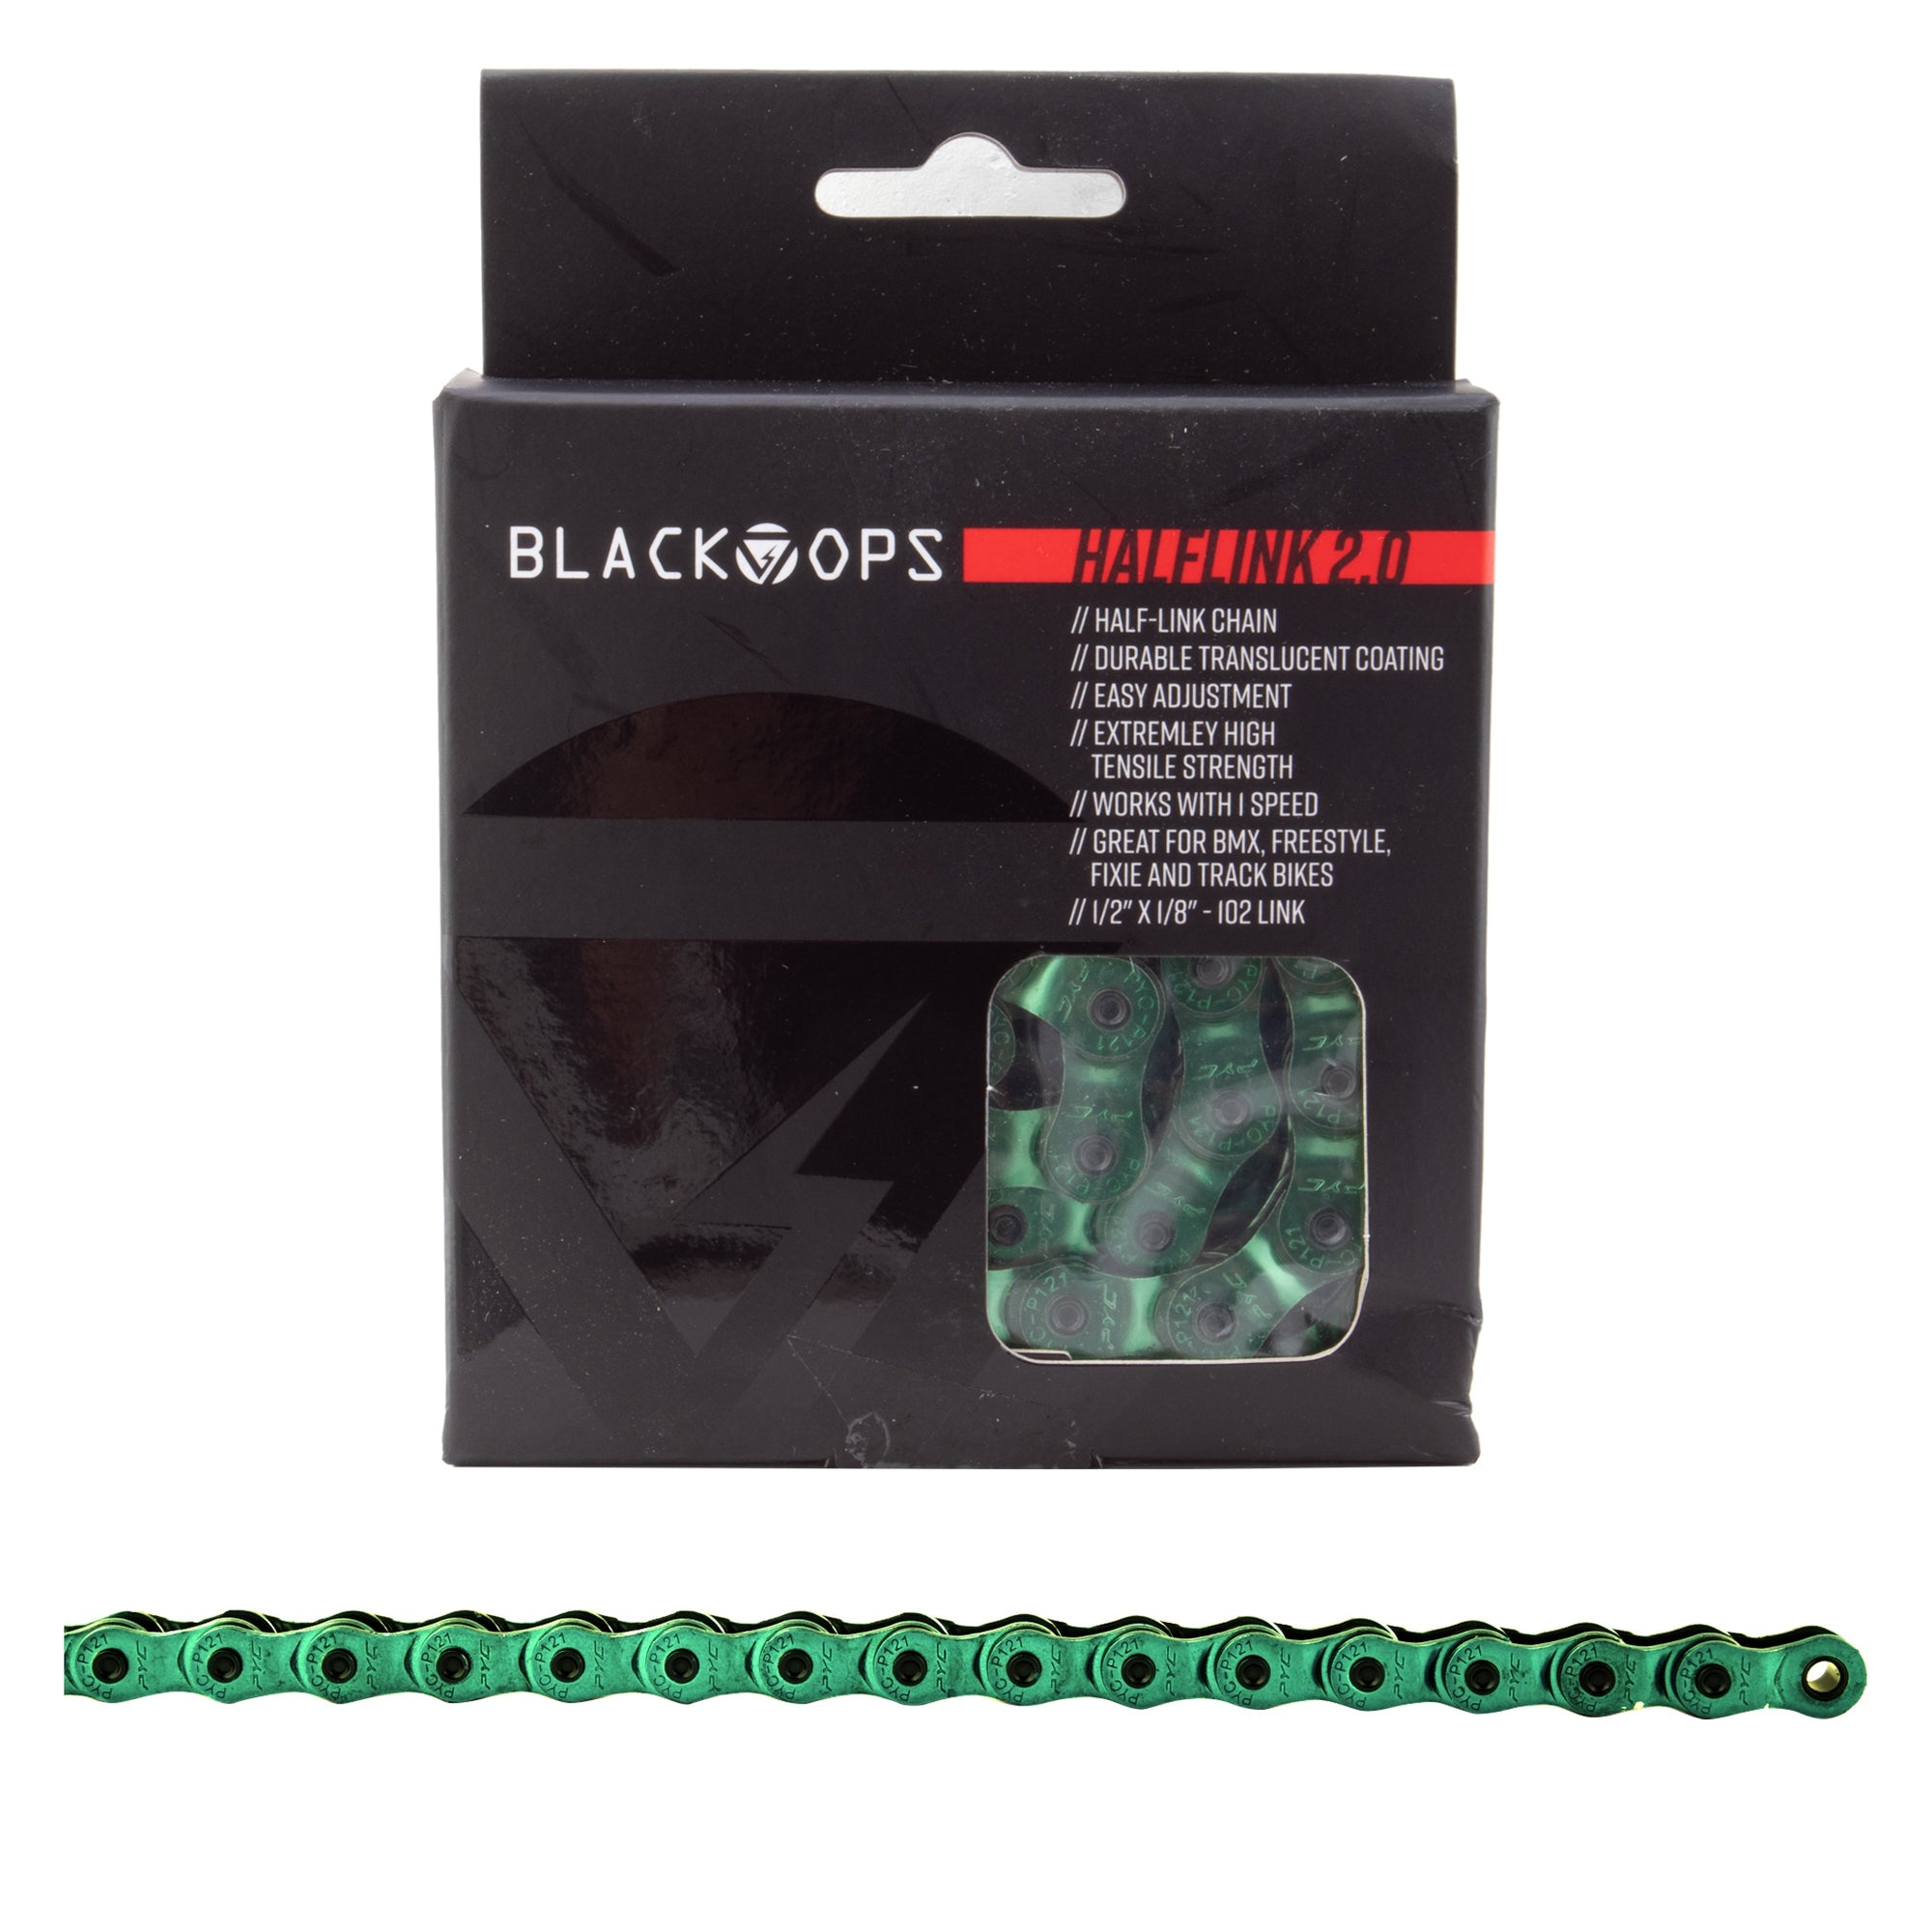 BlackOps HalfLink 2.0 Half-link Chain - Trans Green - 1/2"x1/8"